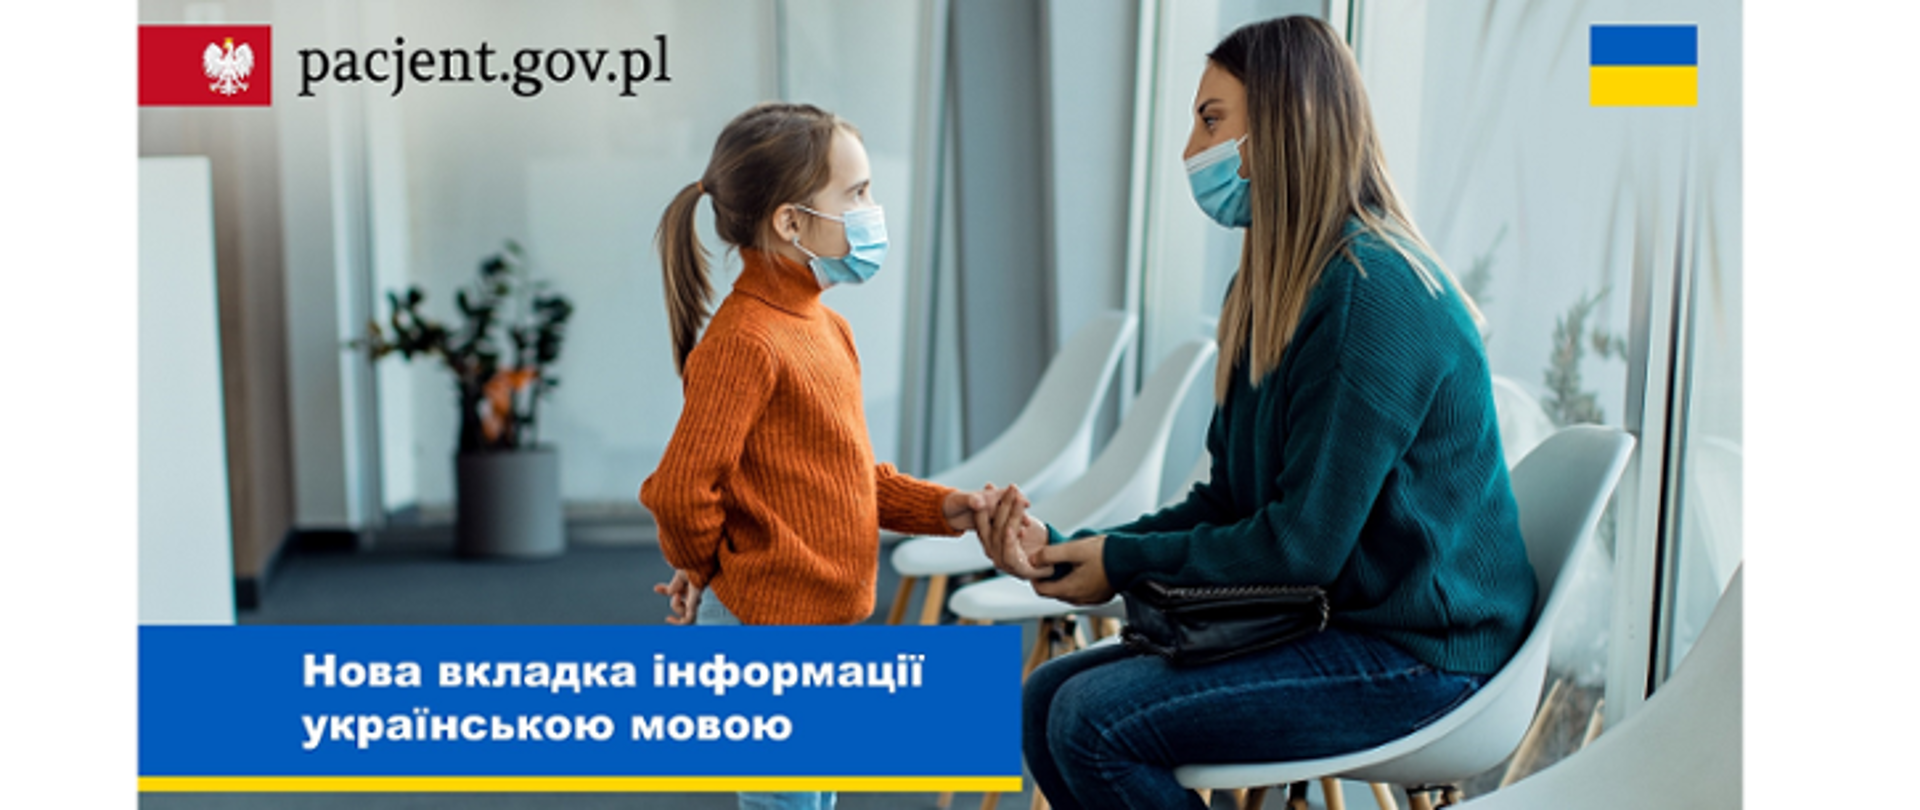 Zakładka „Pacjenci z Ukrainy” na pacjent.gov.pl. Na zdjęciu kobieta trzyma za rękę dziewczynkę, obie mają maseczki ochronne na twarzy. W prawym górnym rogu flaga Ukrainy.